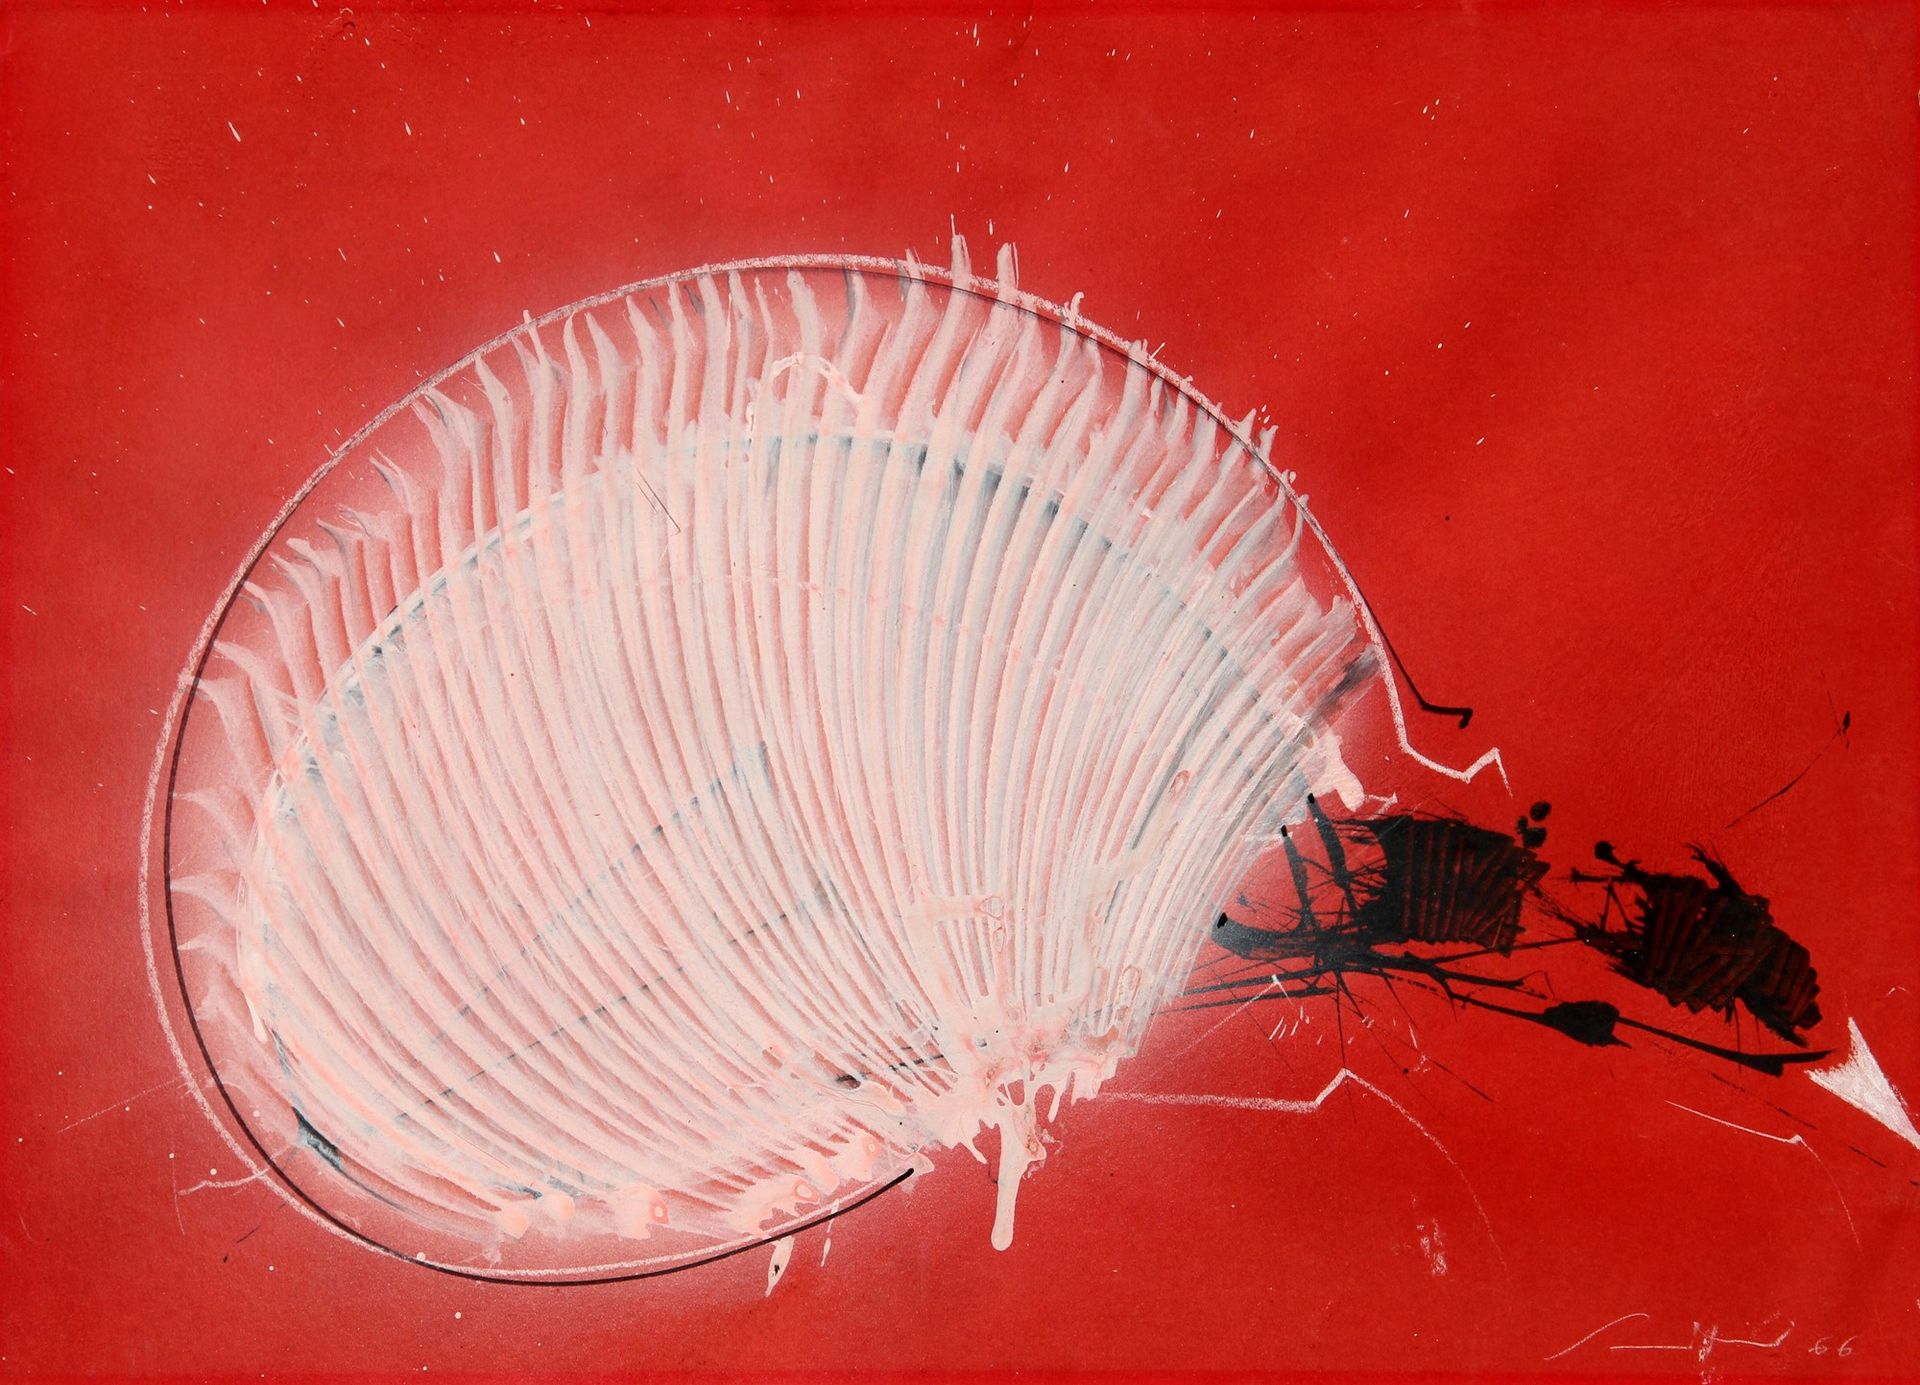 Emilio SCANAVINO Senza titolo 1966, tempera and pencil on cardboard, cm. 50x70

&hellip;